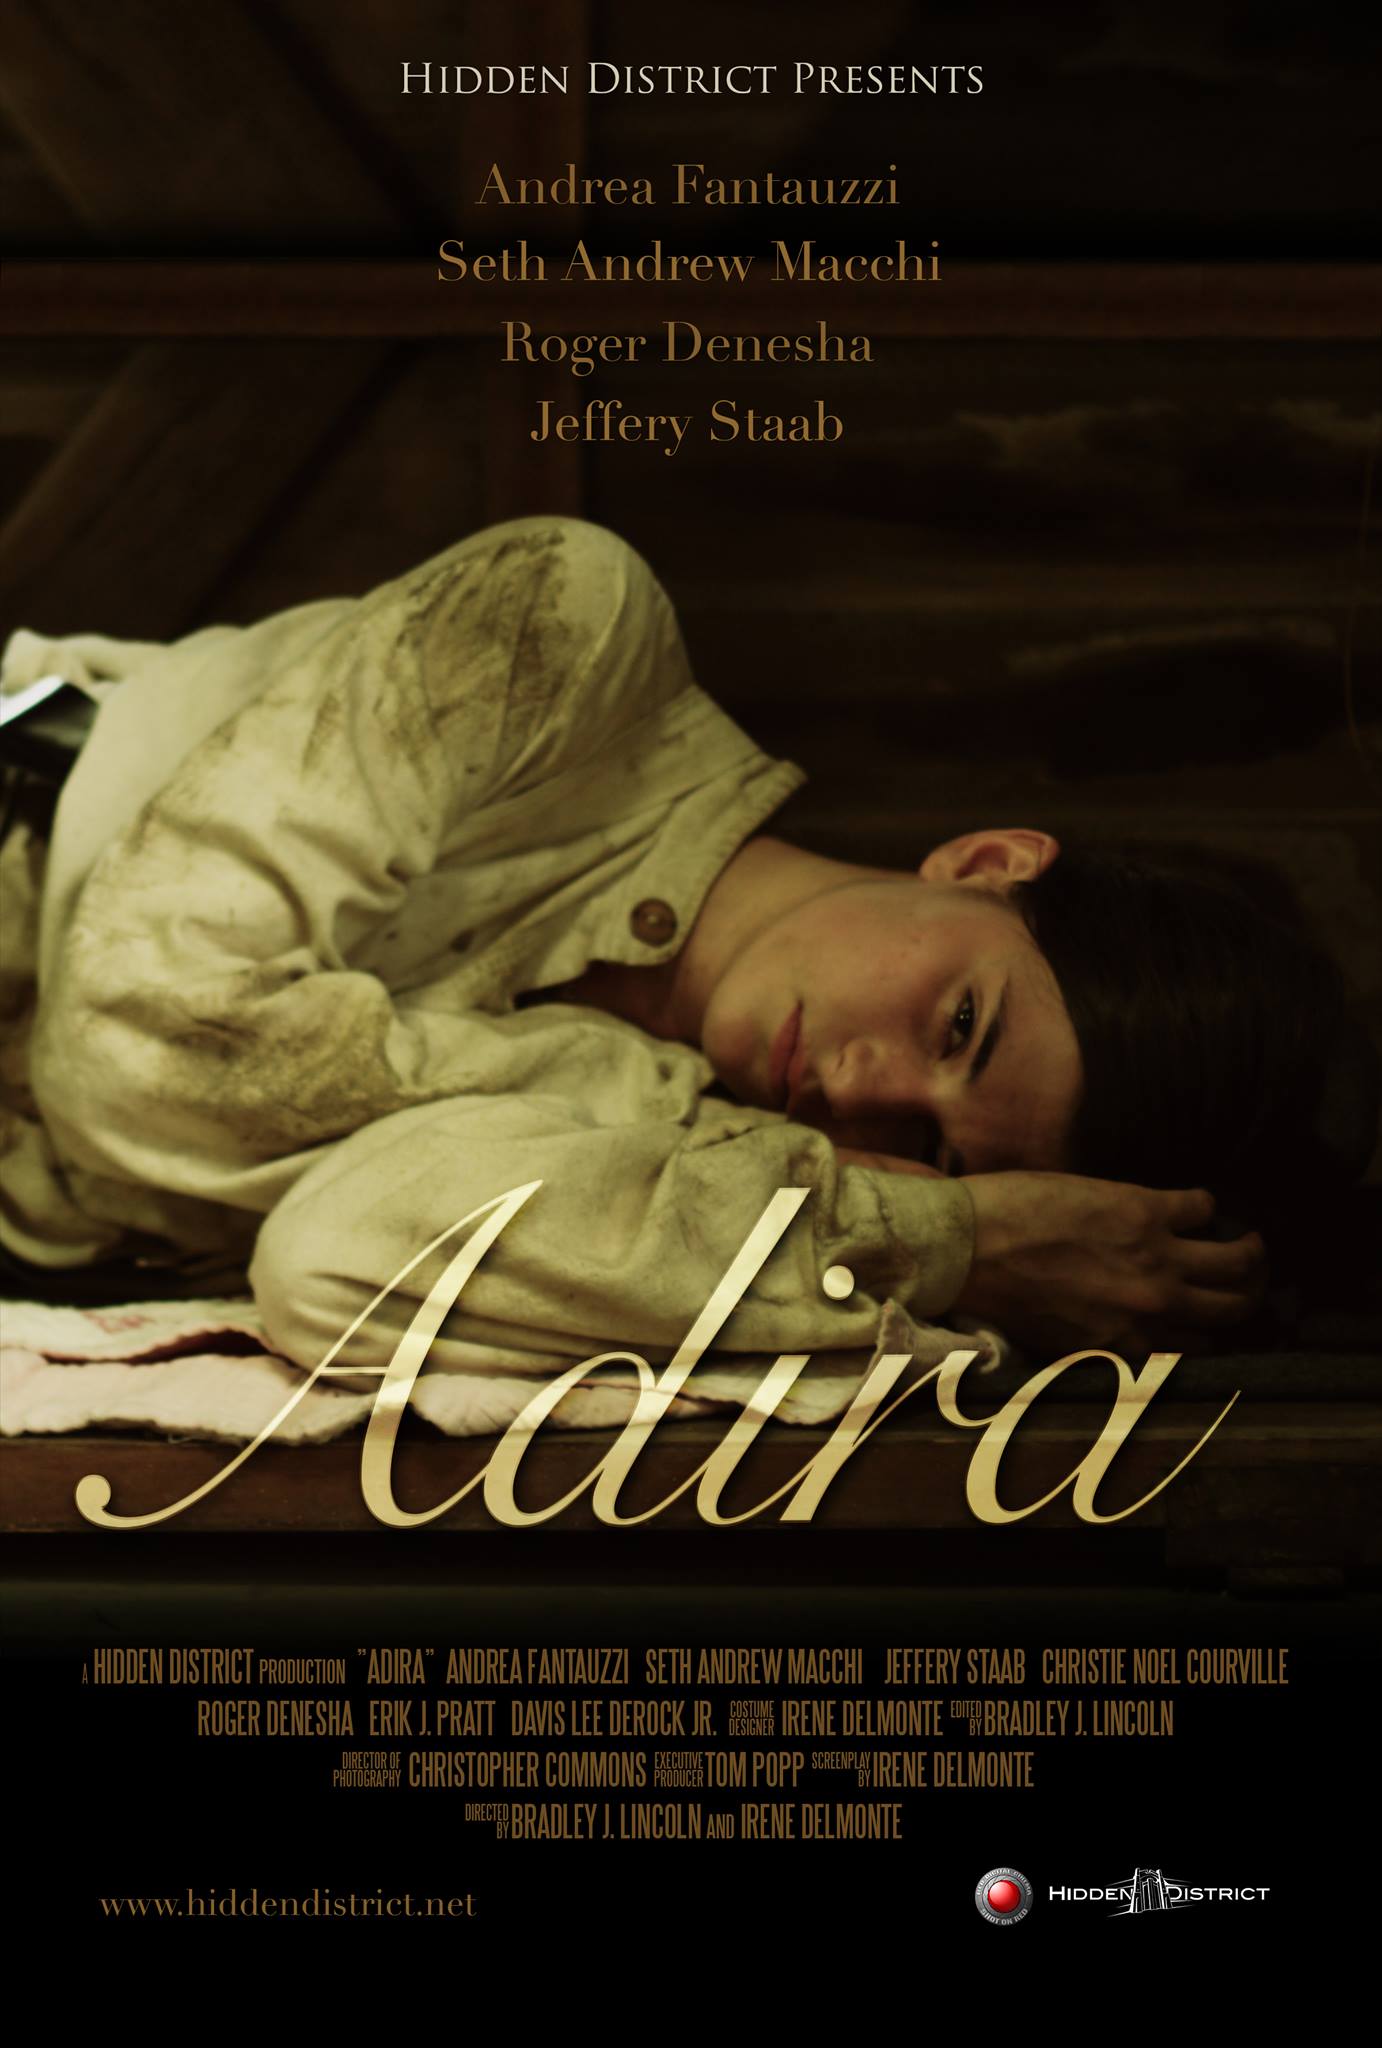 Andrea Fantauzzi stars in Adira as Adira Irvine.